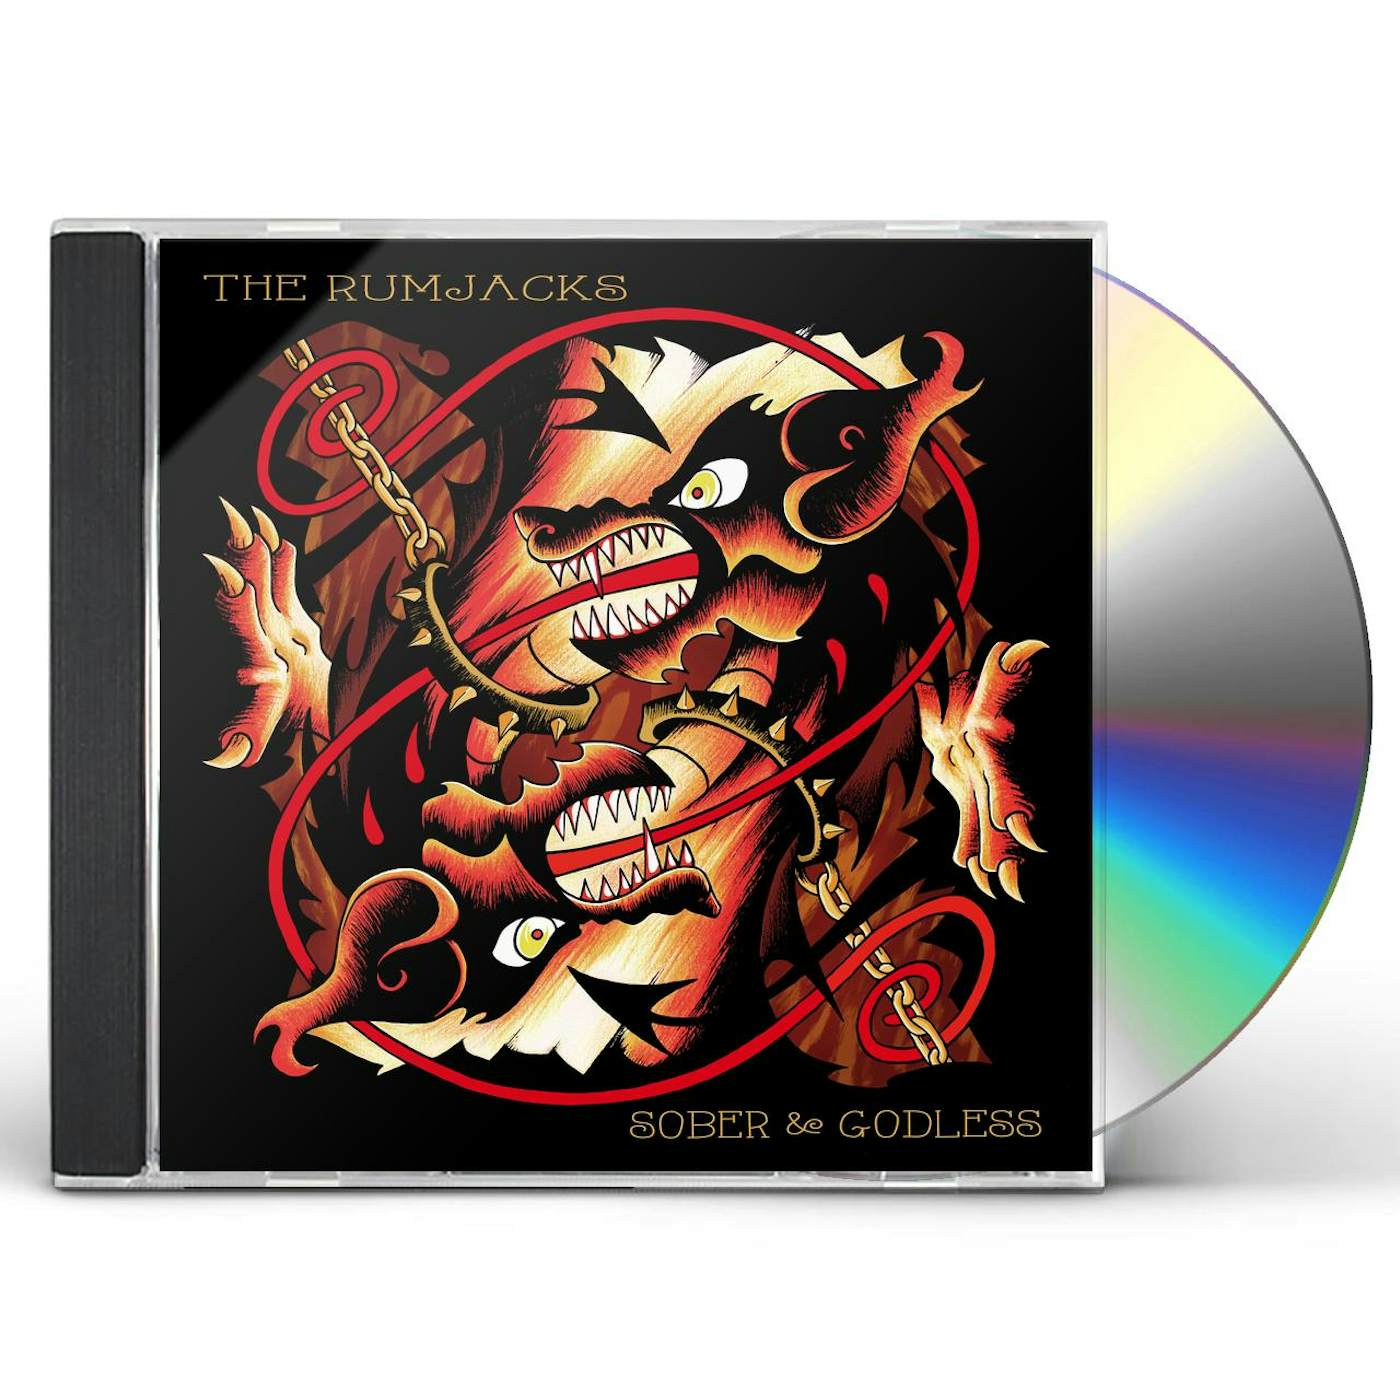 The Rumjacks SOBER & GODLESS CD